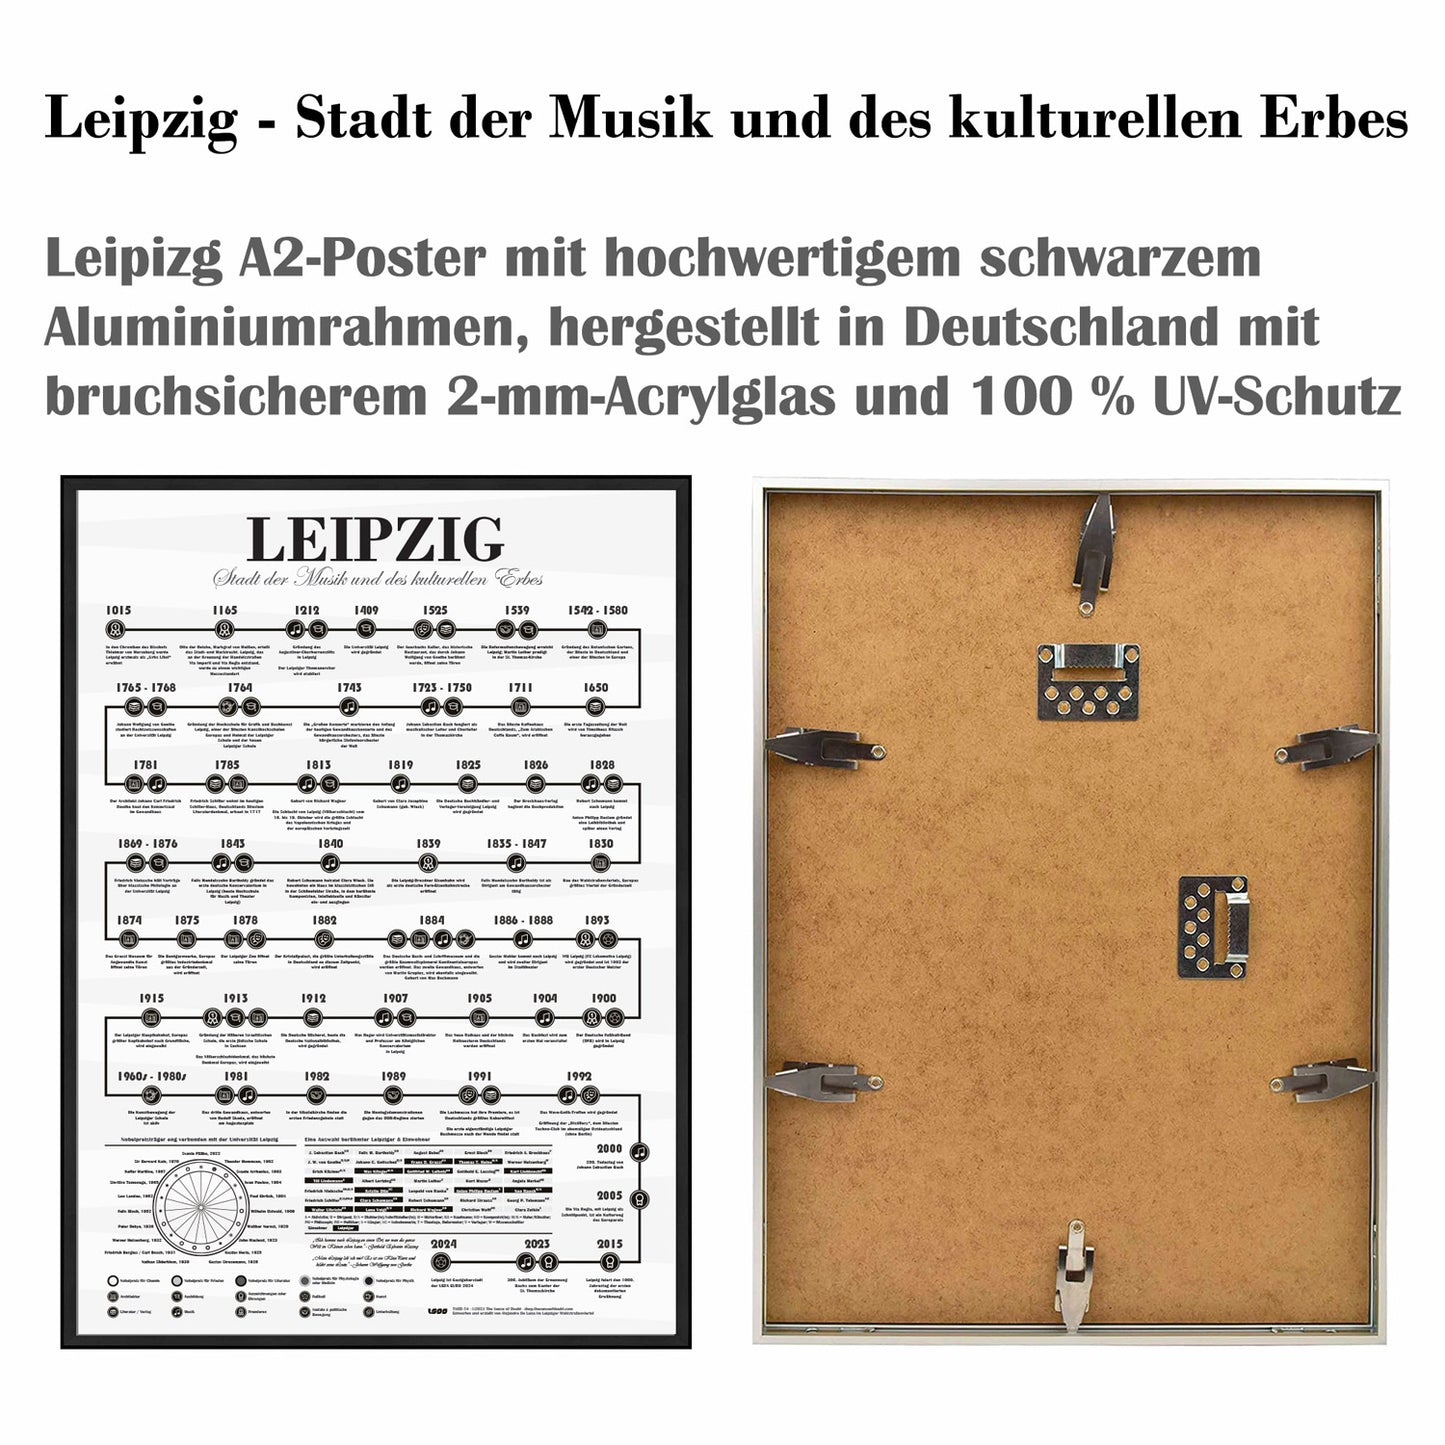 Leipzig - Stadt der Musik und des kulturellen Erbes